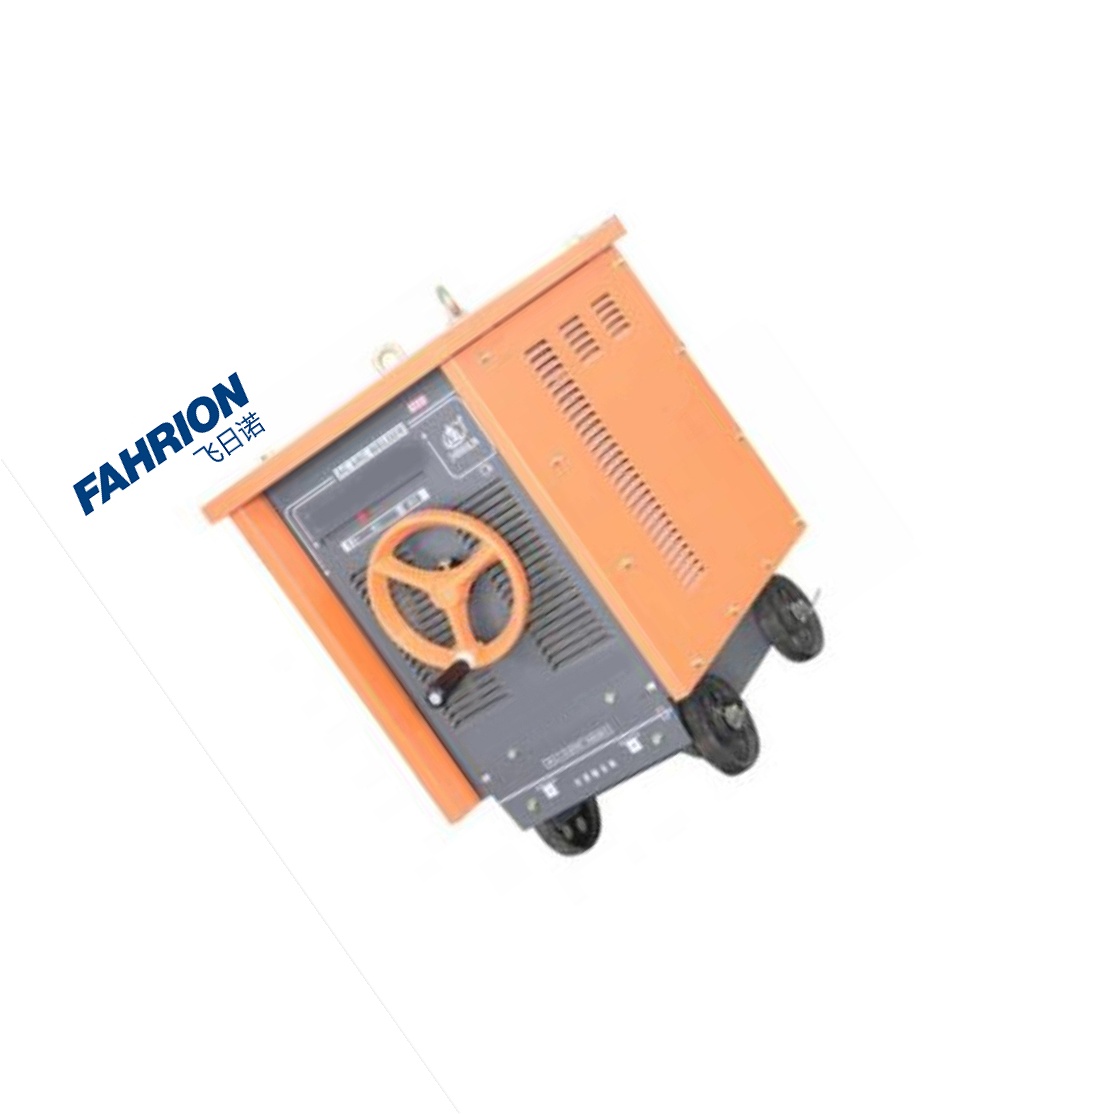 FAHRION 电焊机 GD99-900-3205